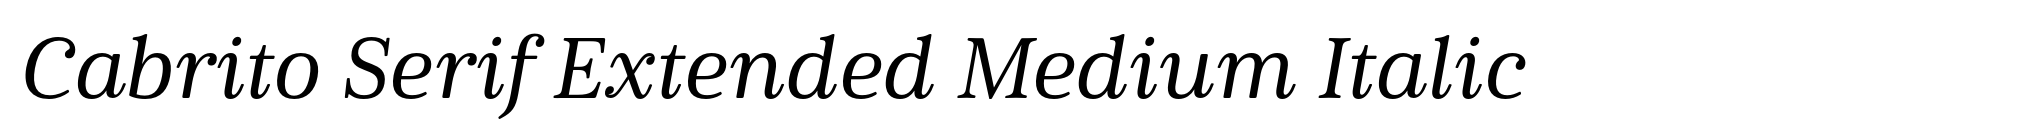 Cabrito Serif Extended Medium Italic image